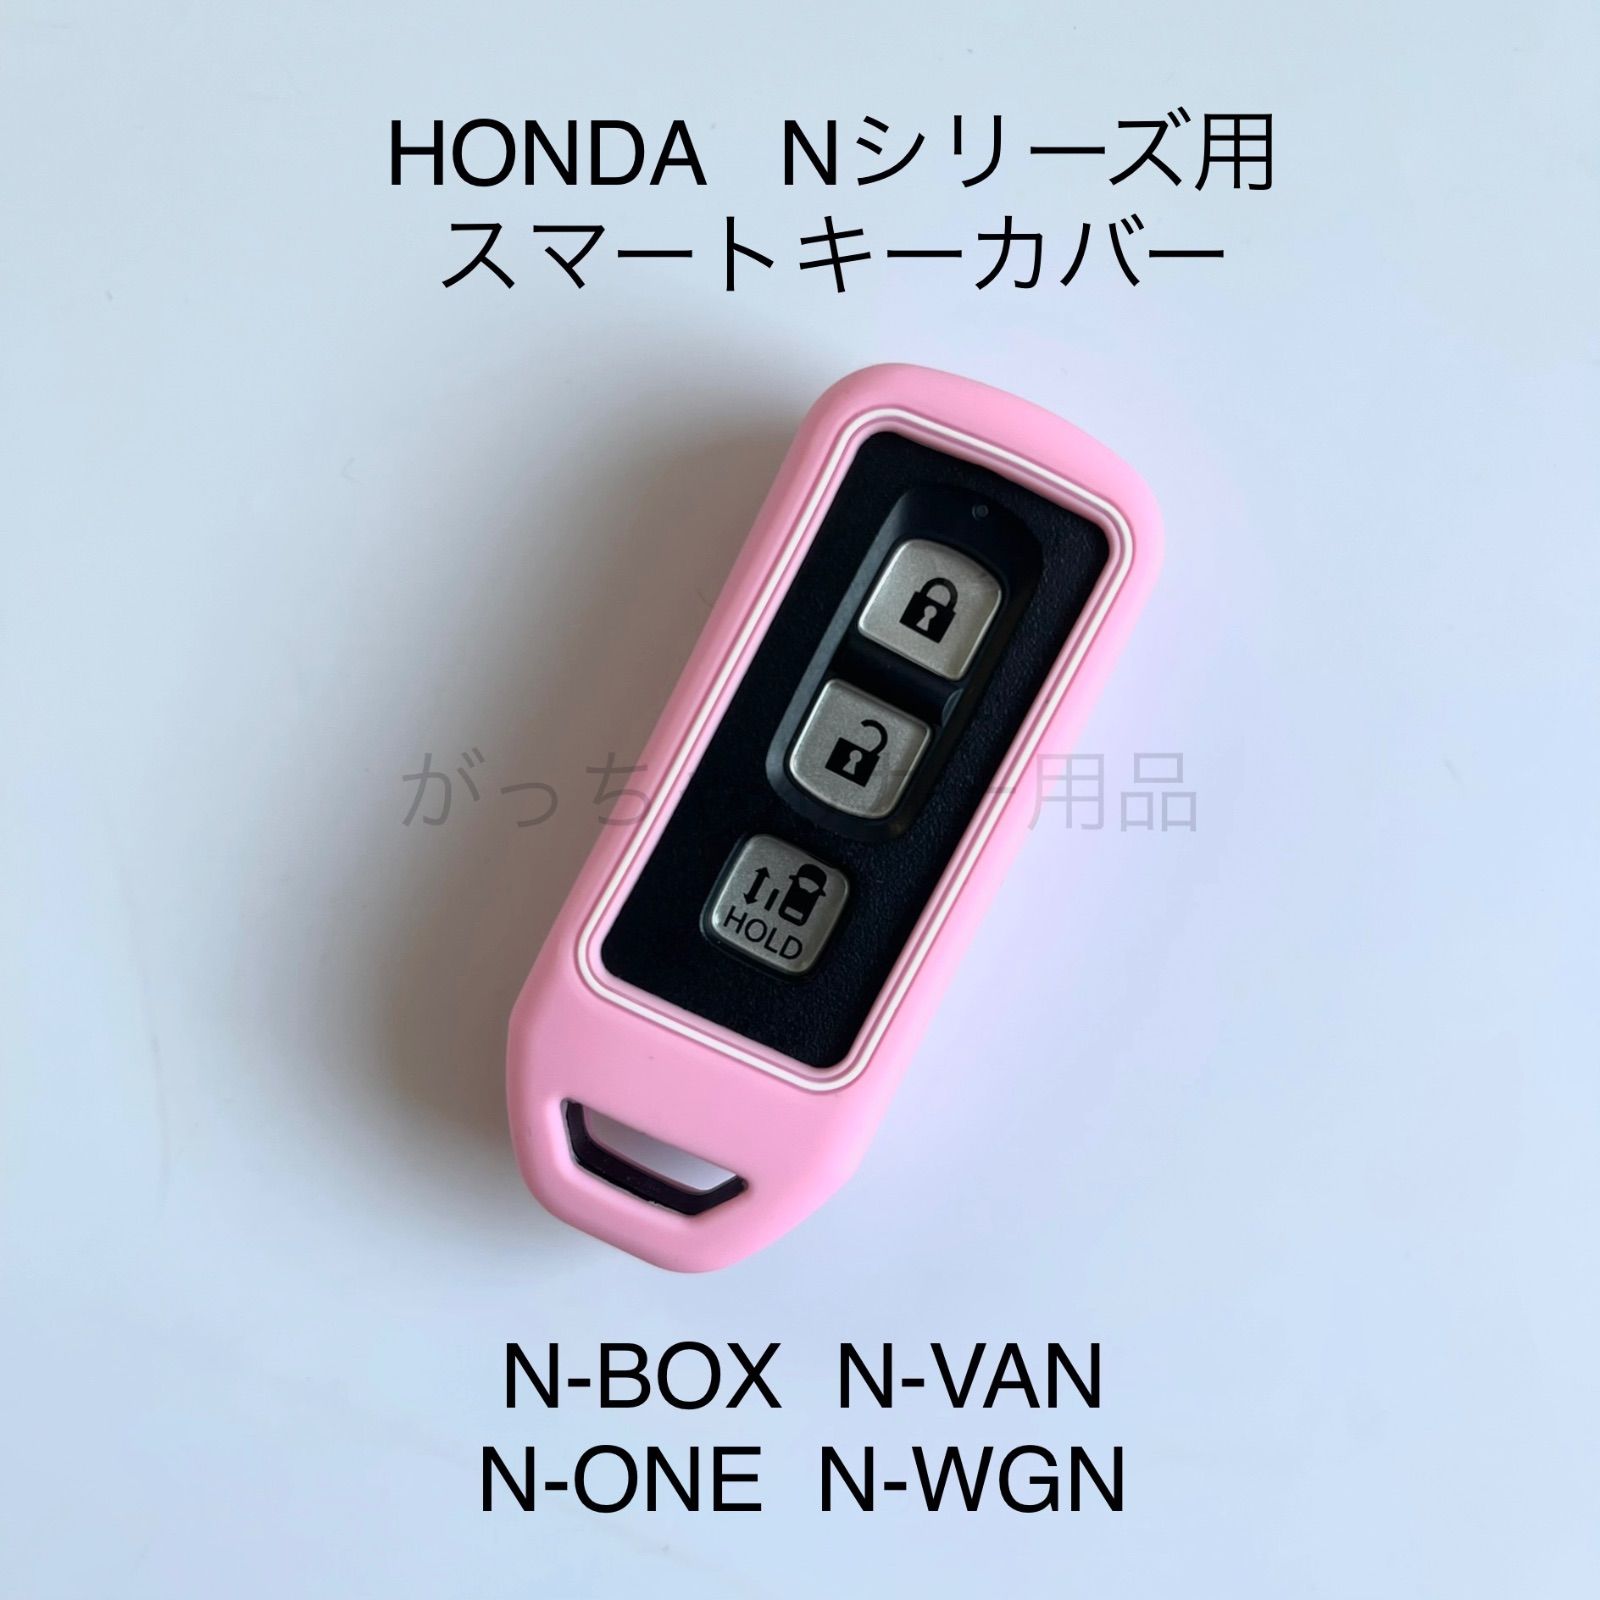 HONDA ホンダ車用 スマートキーカバー Nシリーズ N-BOX N-VAN N-ONE N-WGN 用 現行型 スマートキーケース  シリコンキーカバー シリコンキーケース キーカバー キーケース アクセサリー ドレスアップ 傷予防 傷防止　ピンク